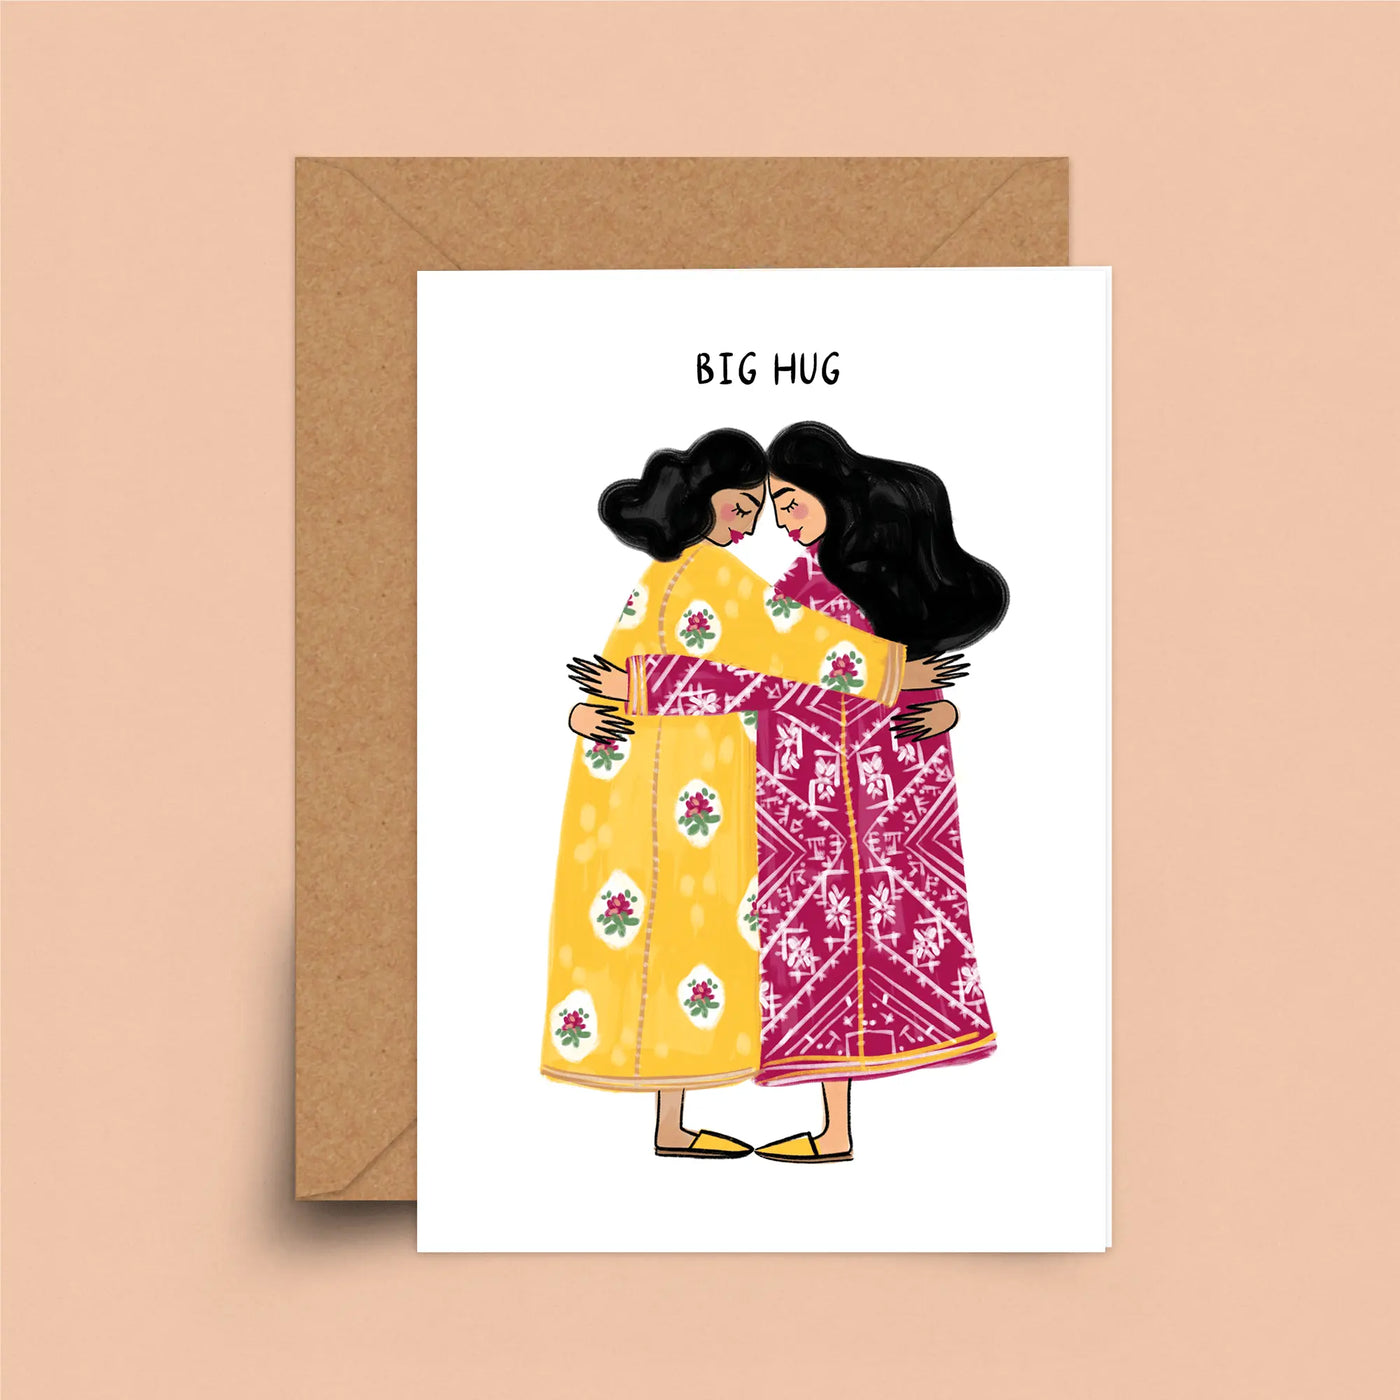 Big Hug Card by Sakina - Migration Museum Shop